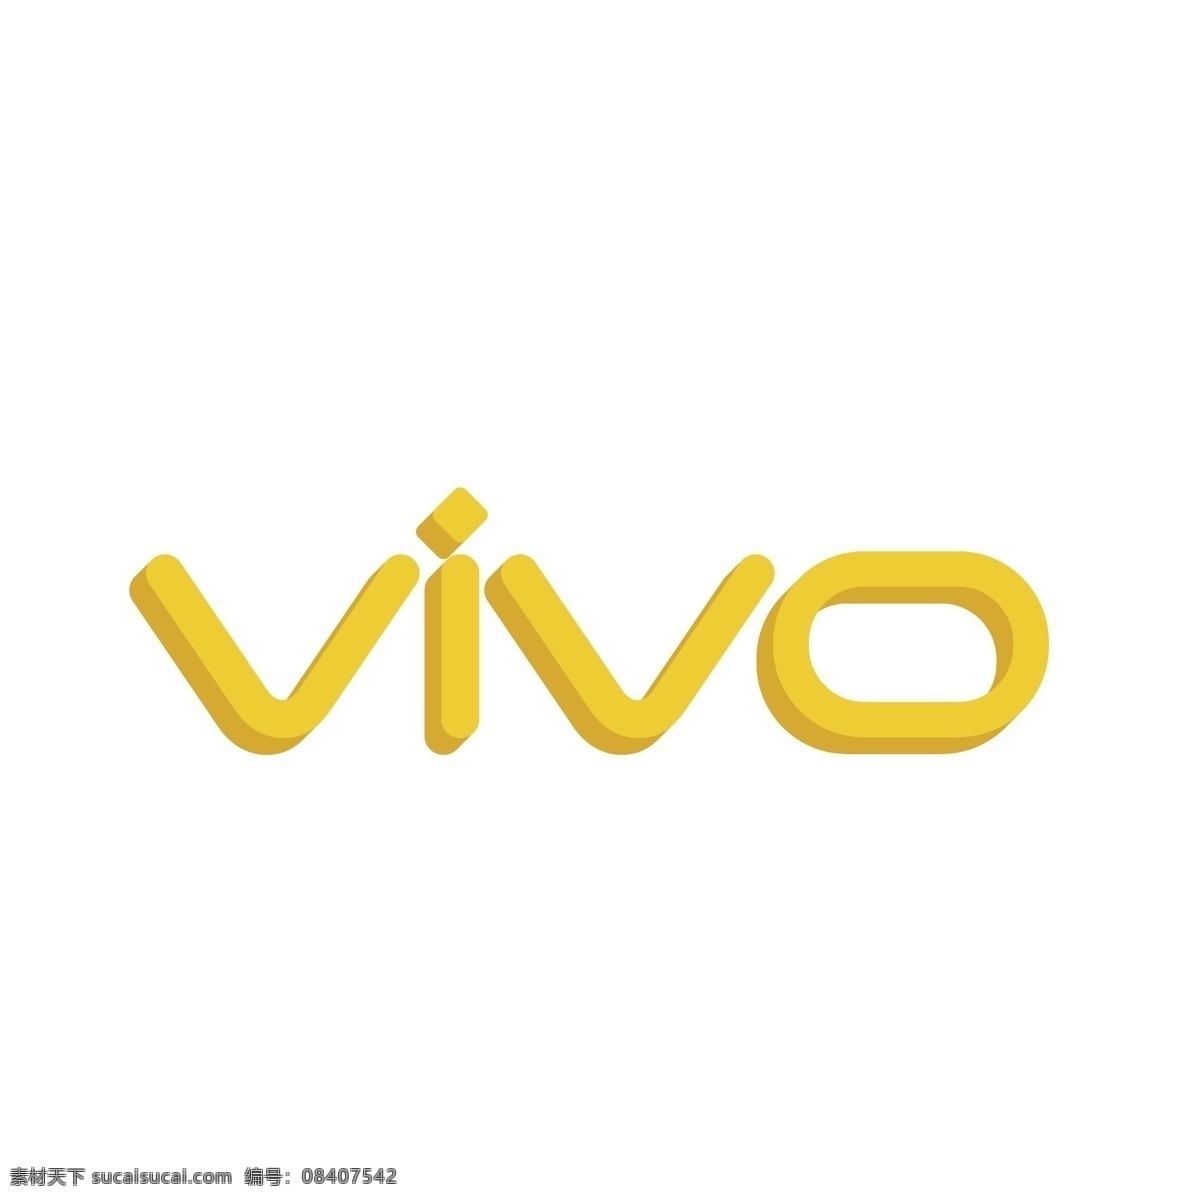 黄色 dvivo 手机品牌 logo 图标 vivo logo图标 电子产品 企业logo 卡通 手绘